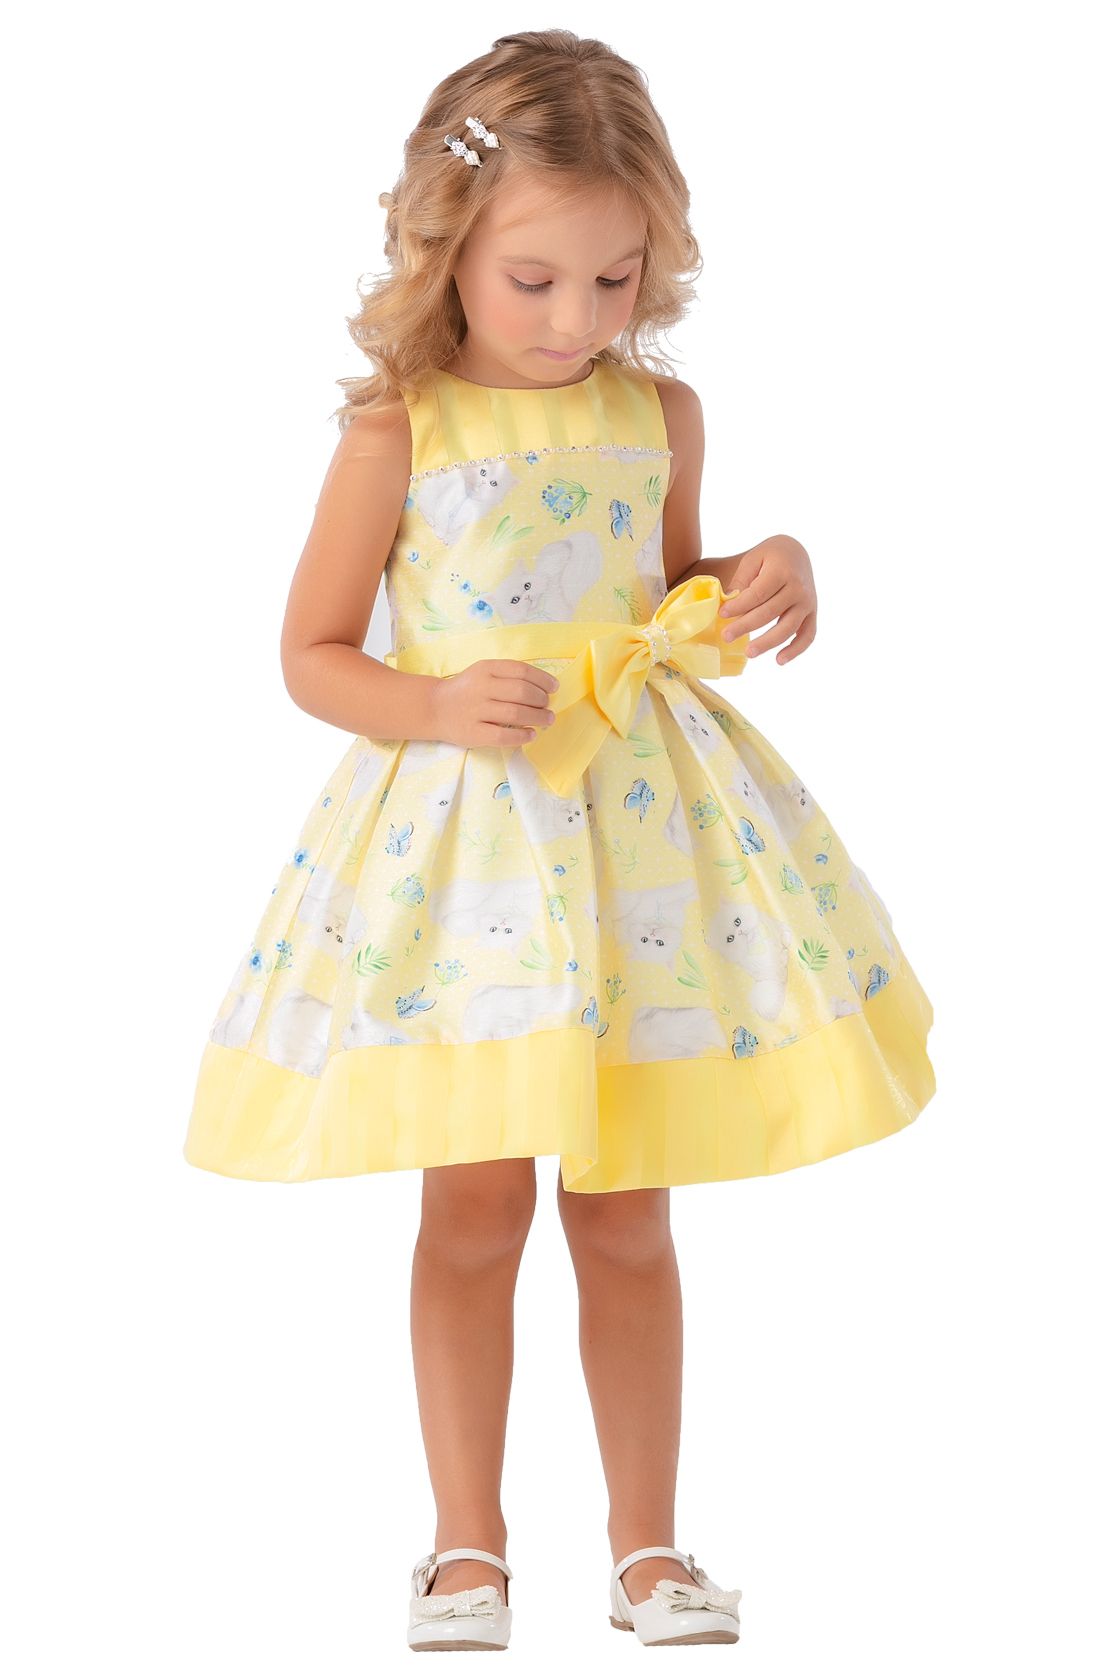 vestido infantil amarelo